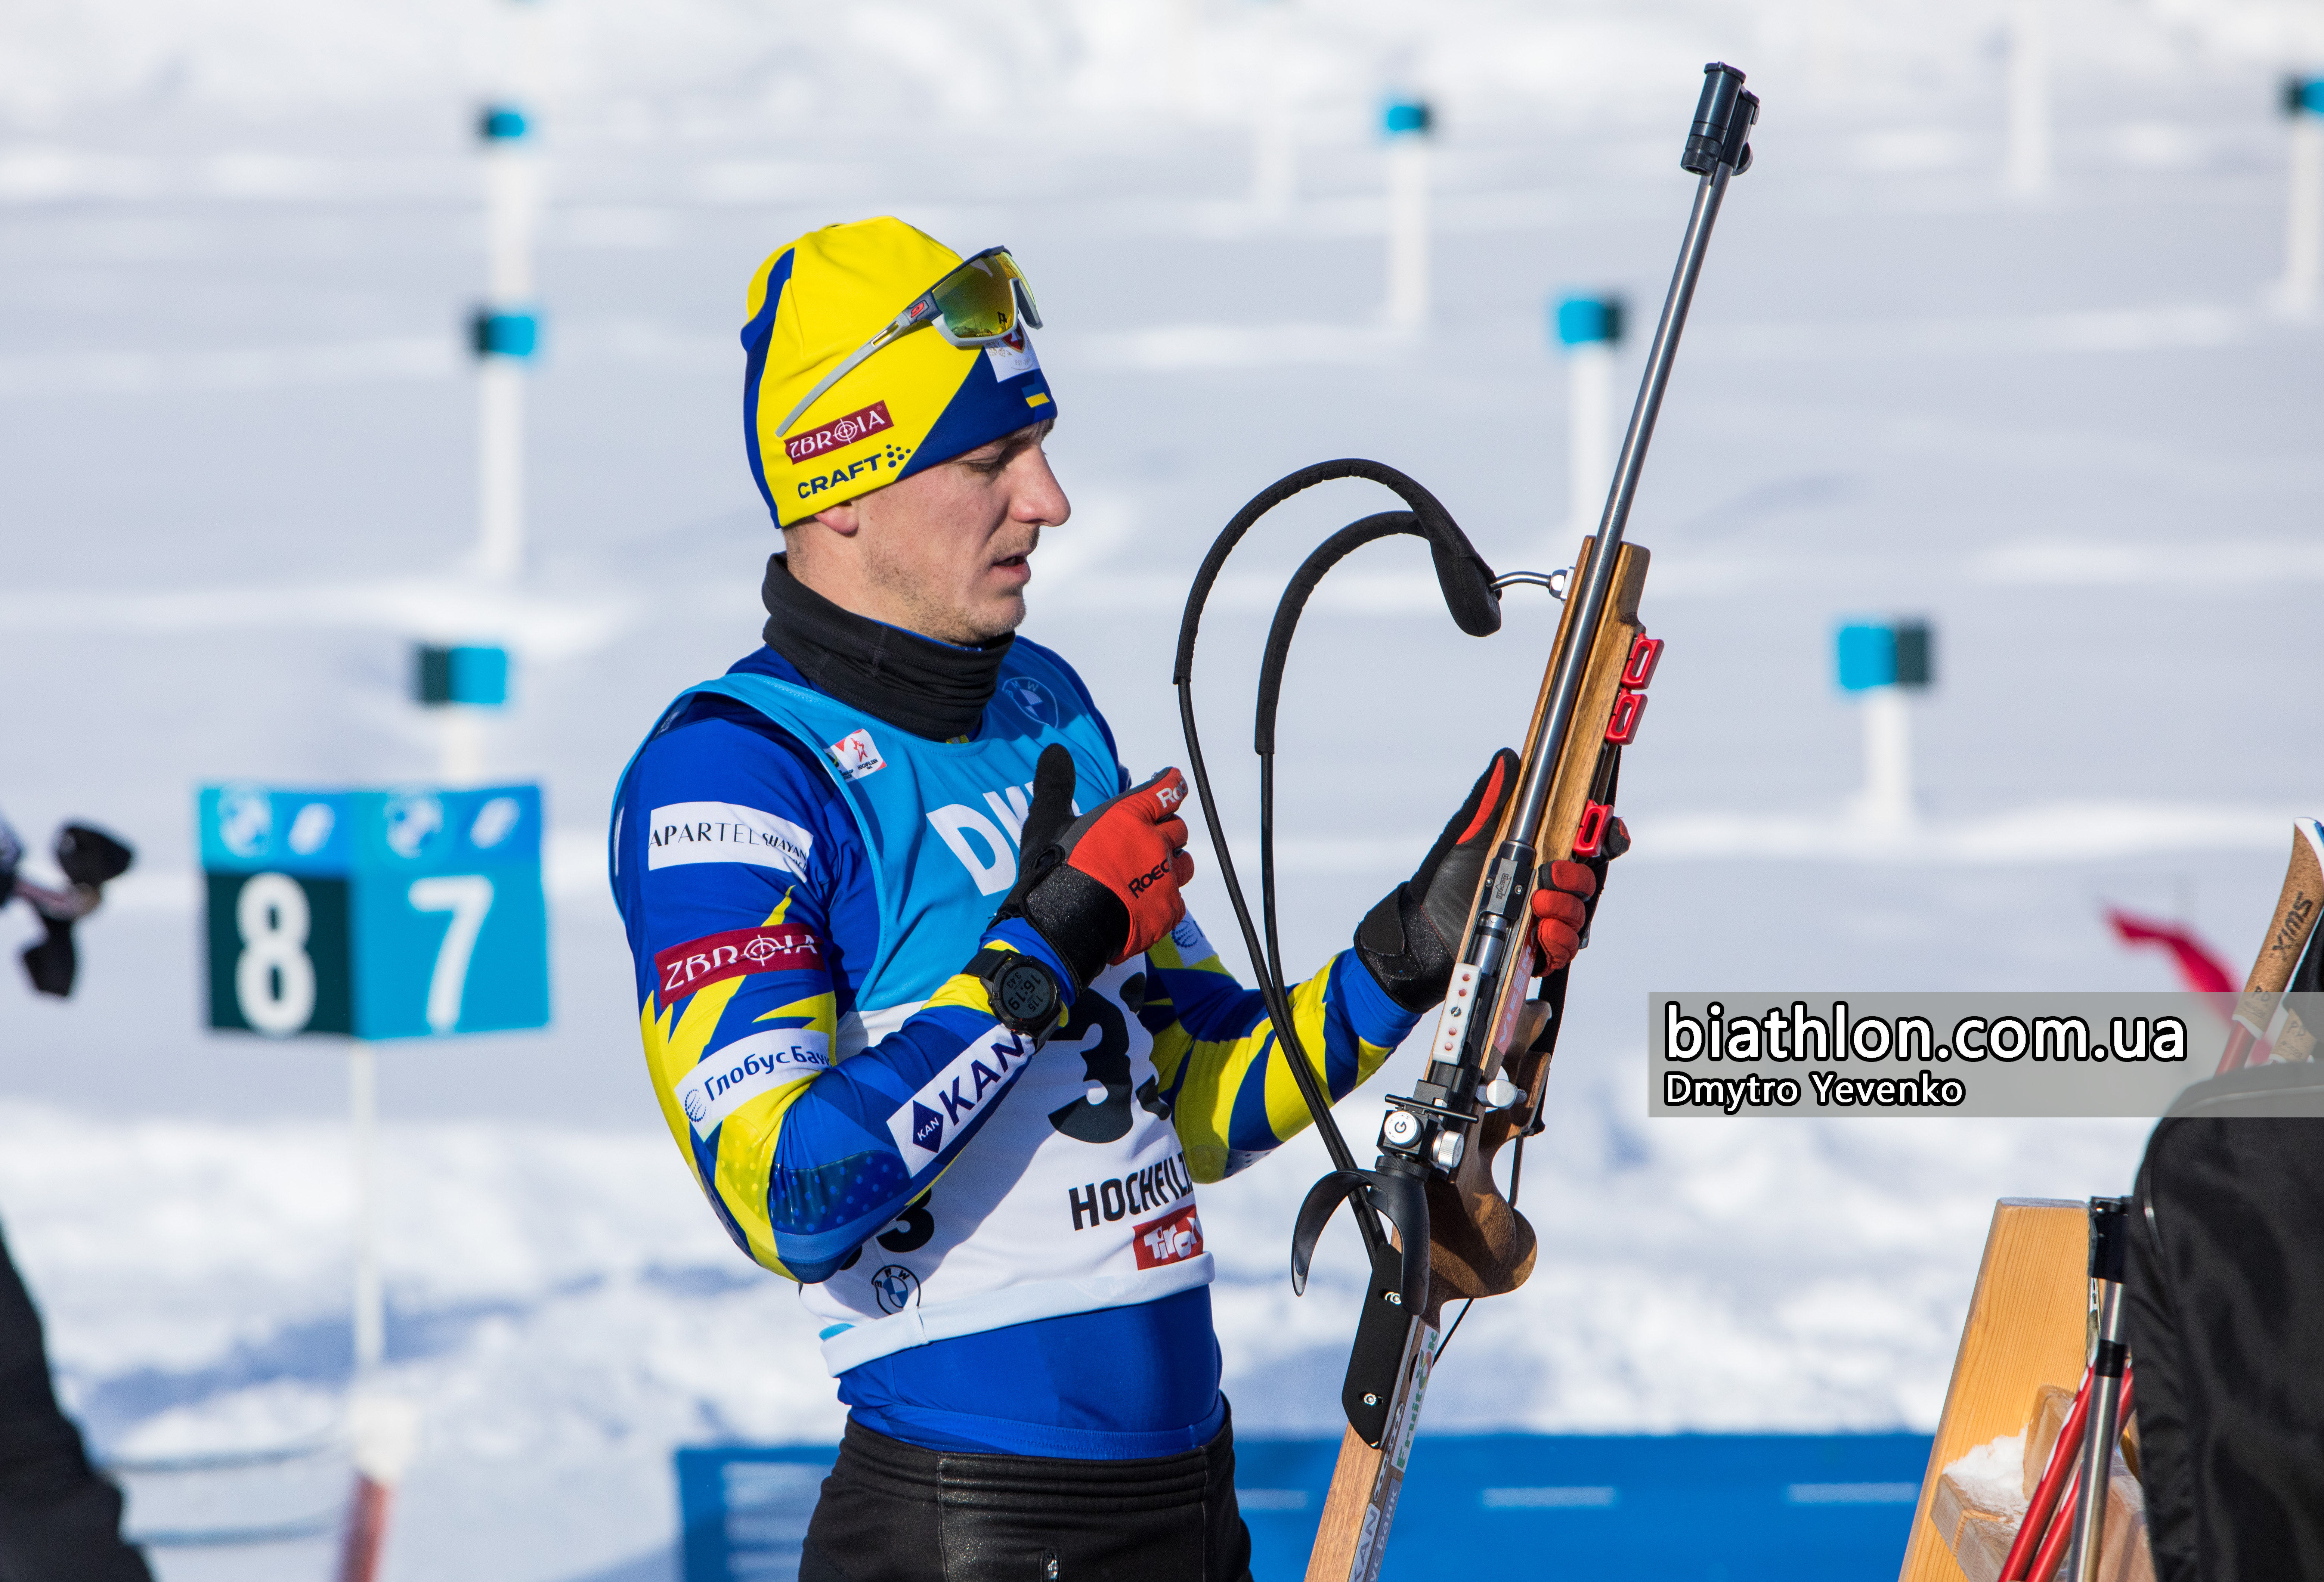 https://www.biathlon.com.ua/ua/uploads/2021/131021.jpg